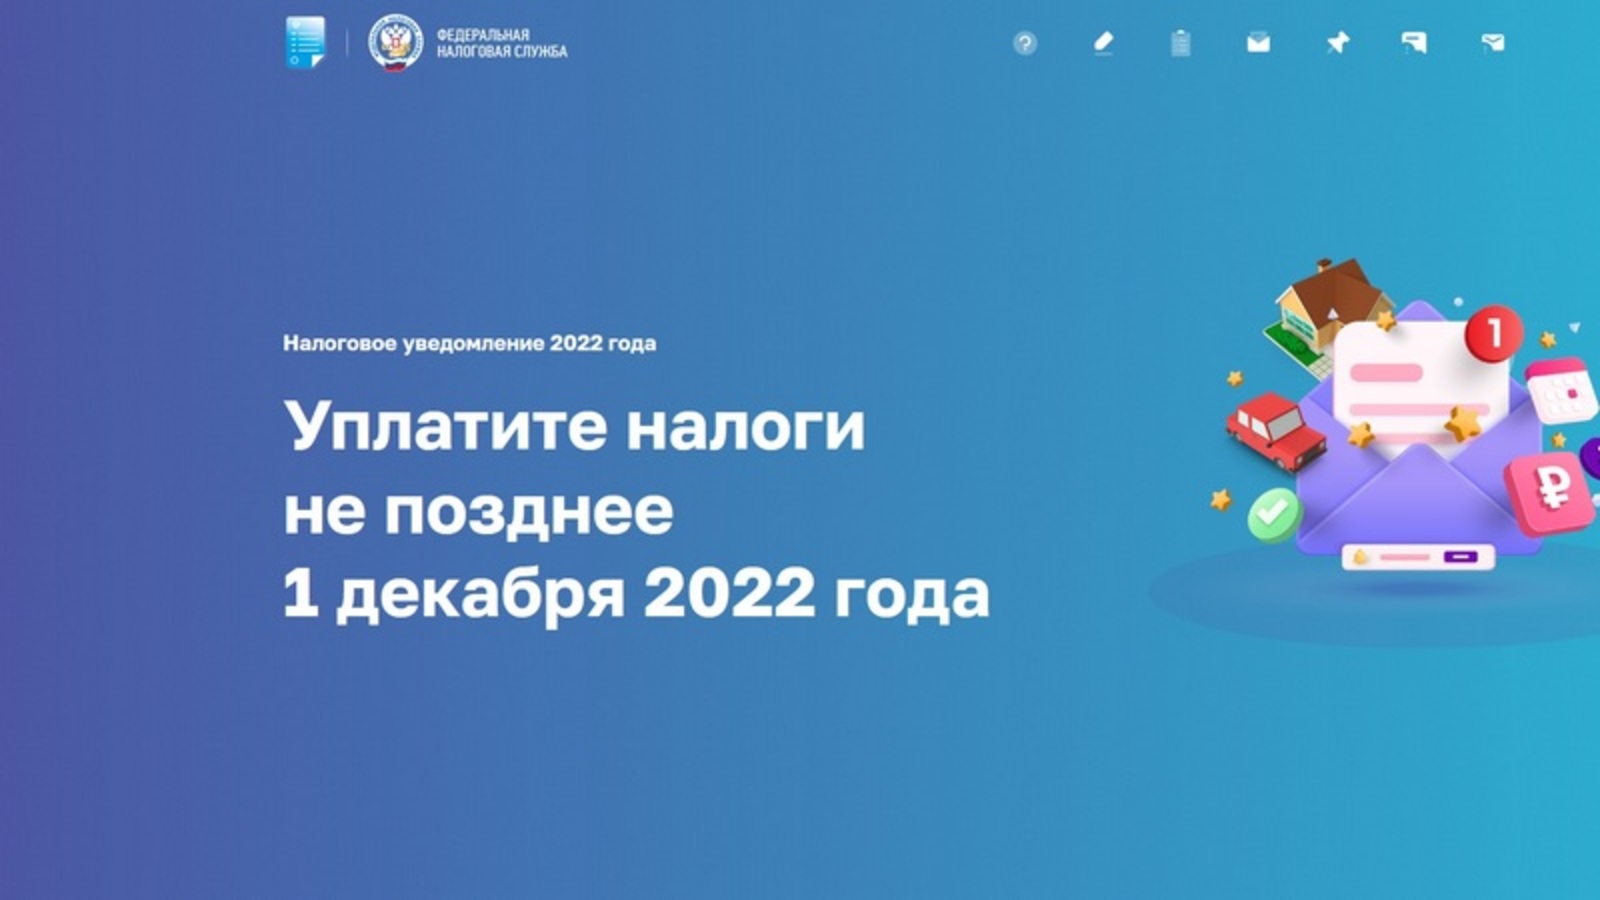 В помощь гражданам разработана новая промостраница «Налоговое уведомление 2022 года»